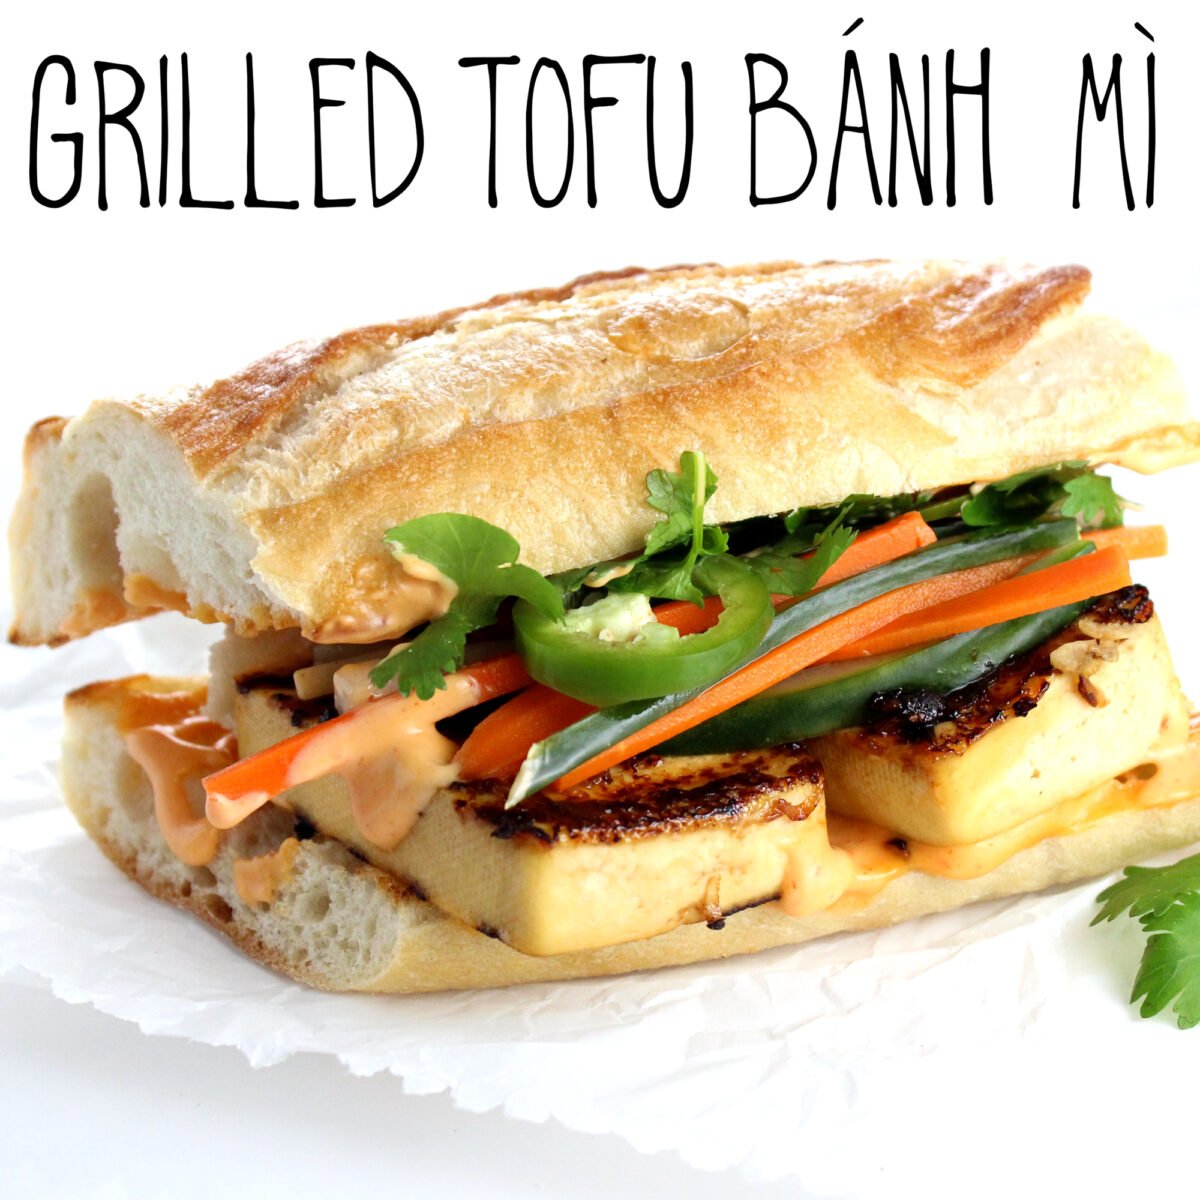 Grilled Tofu Banh Mi